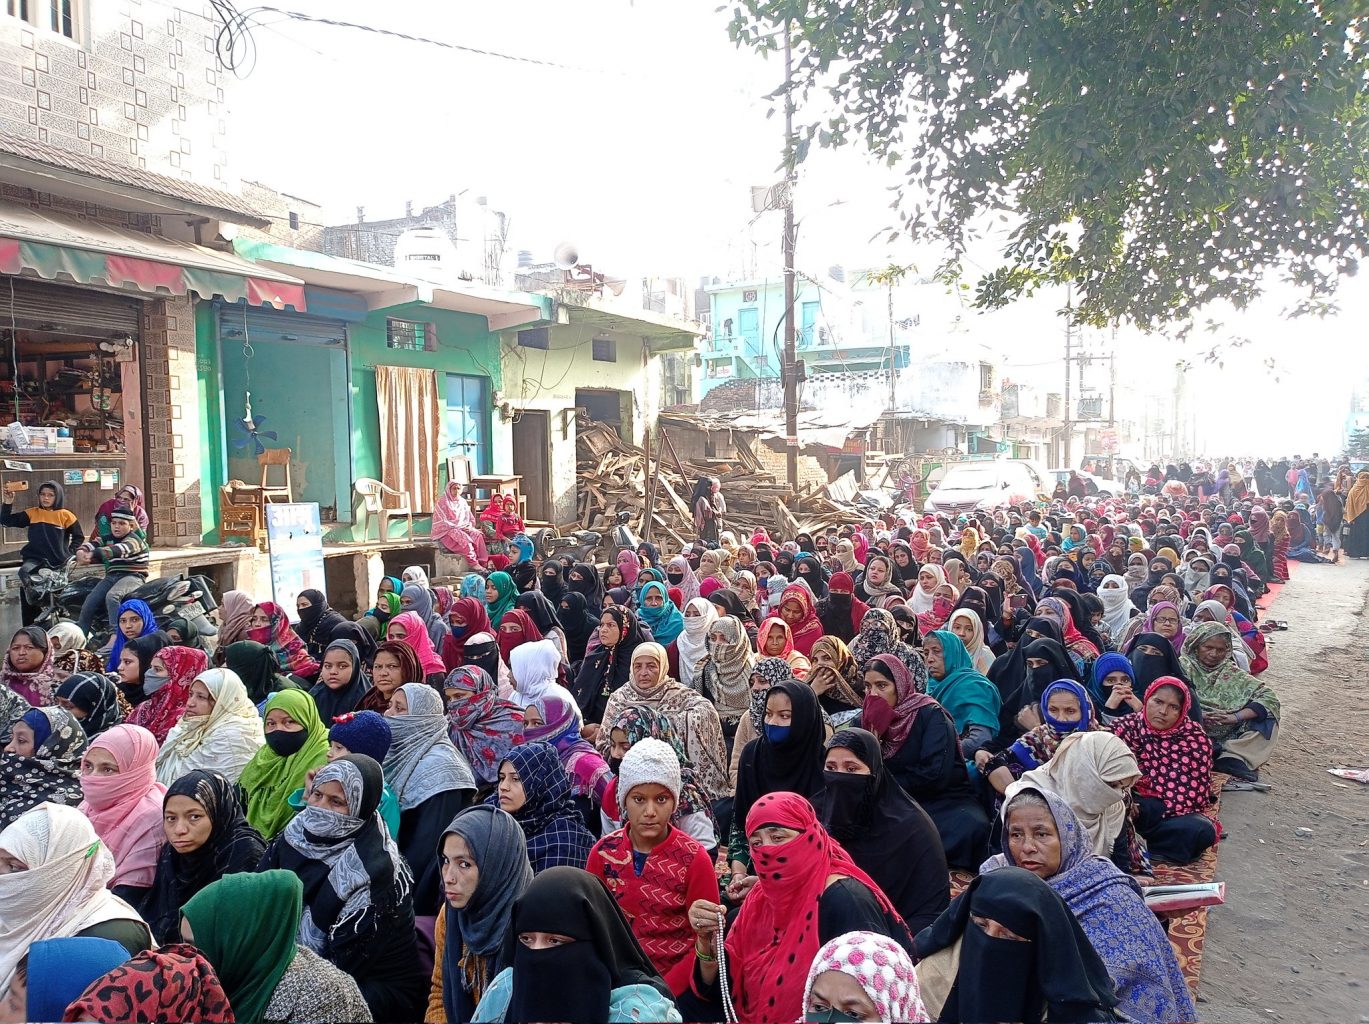 ہلدوانی میں بے دخلی کے فیصلے کے خلاف  ایک احتجاجی مظاہرہ  کی تصویر۔ (فوٹوبہ : سمیدھا پال)